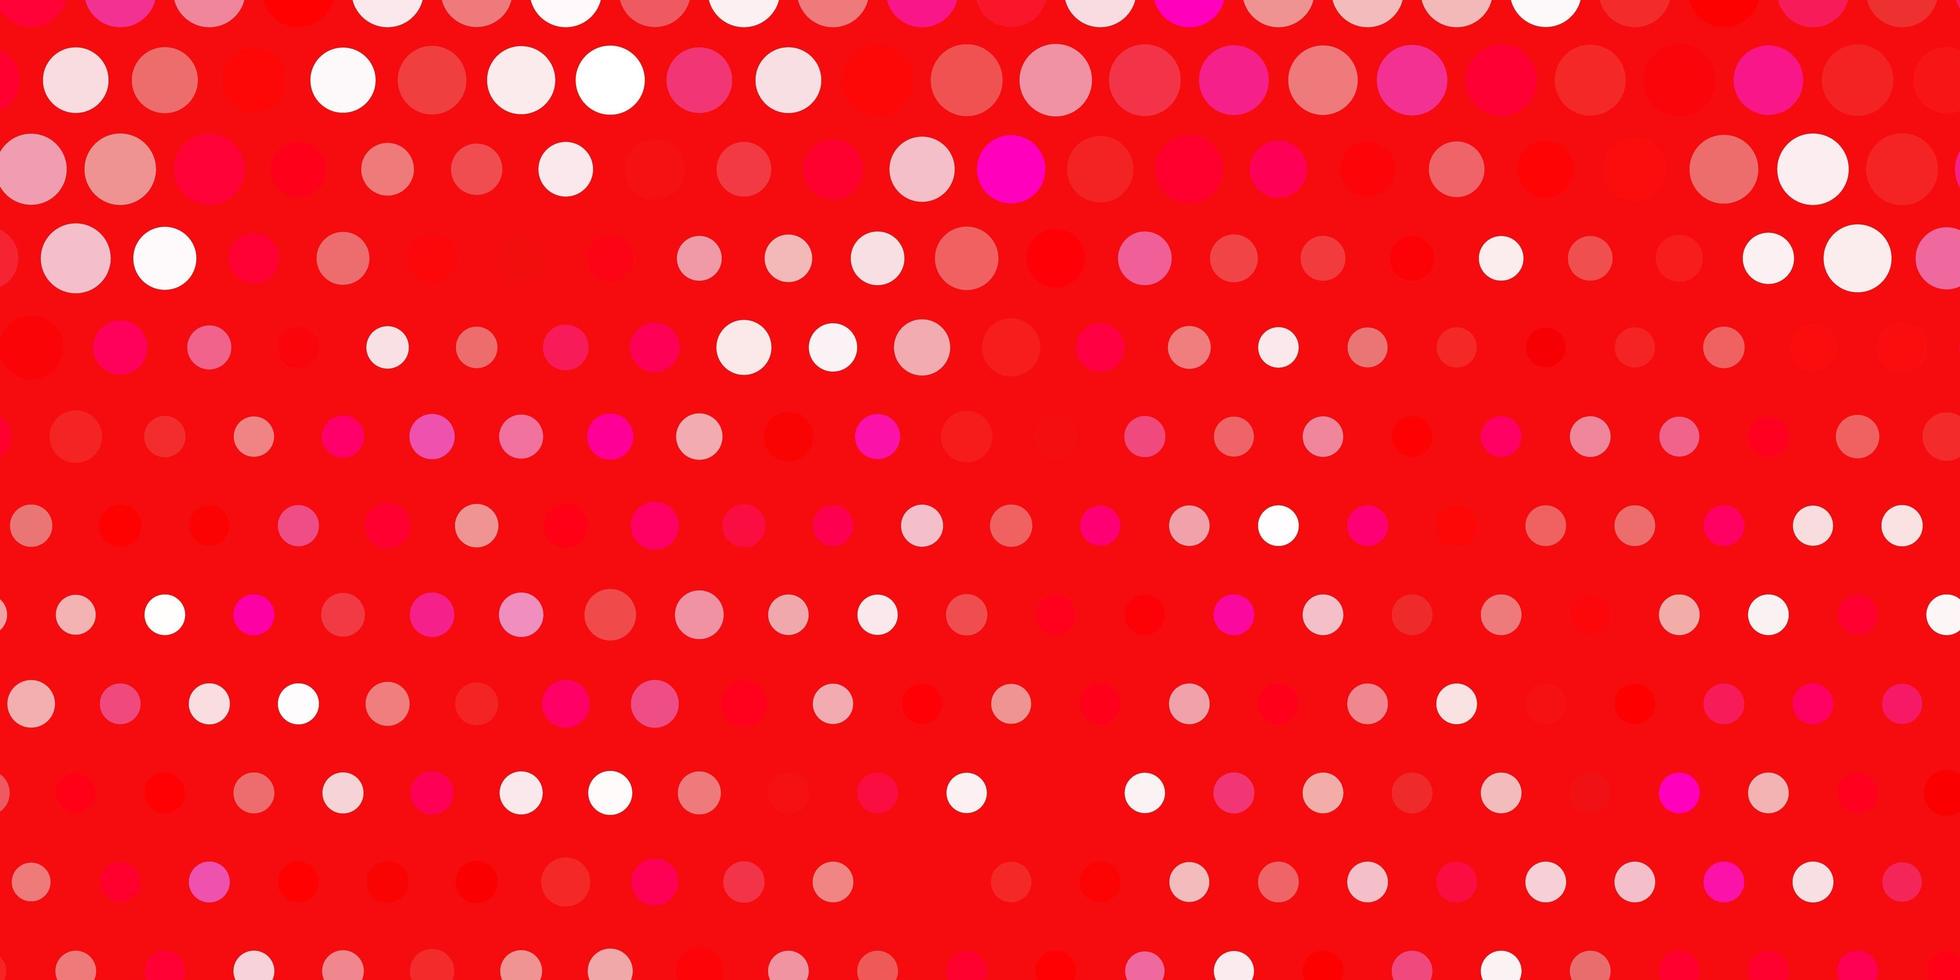 layout vettoriale rosa chiaro, rosso con forme circolari.